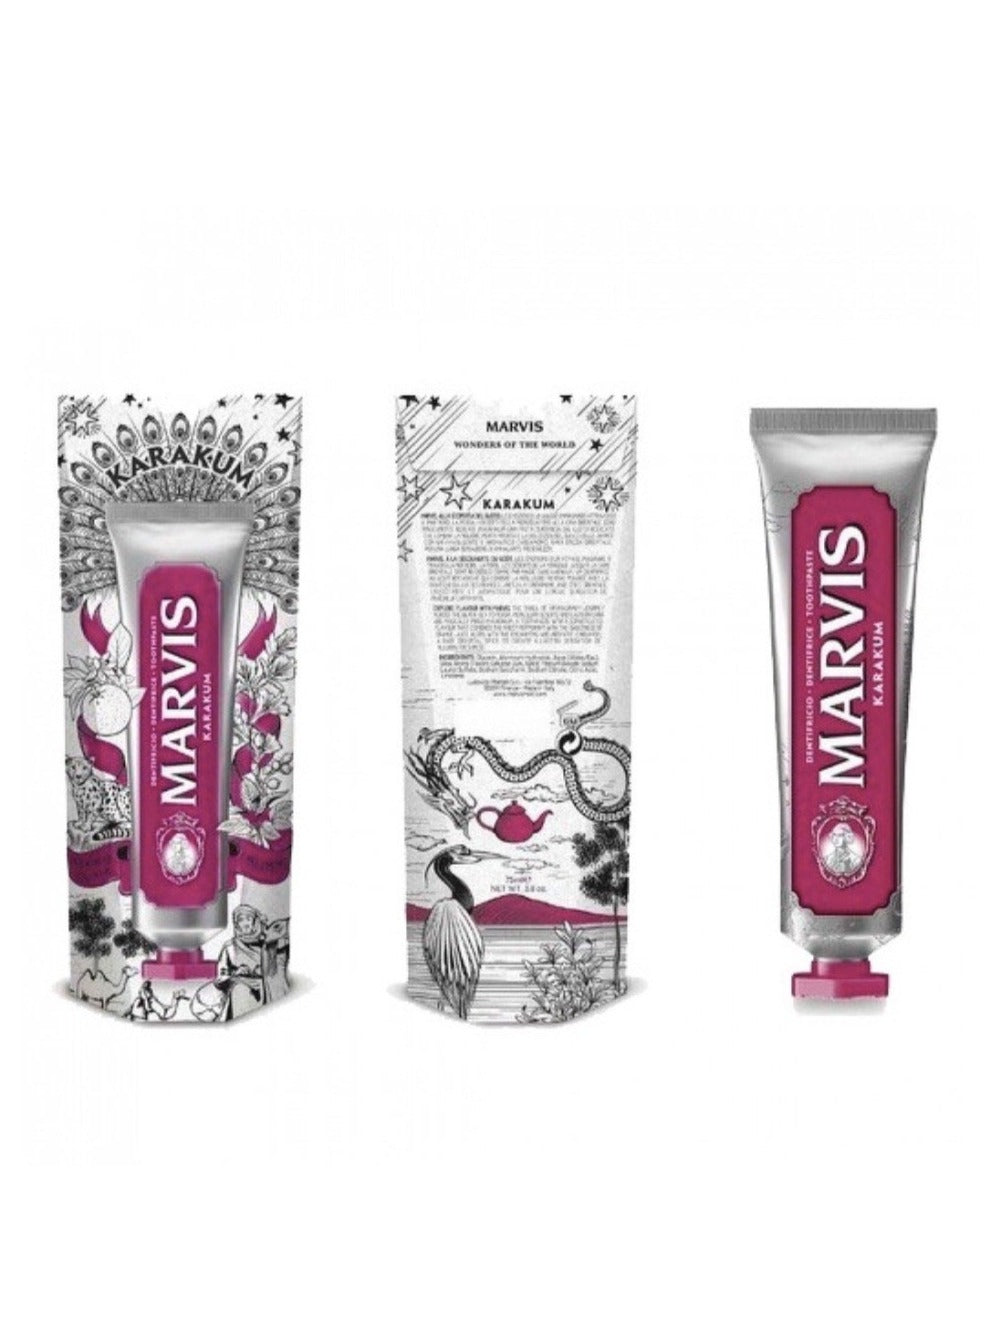 MARVIS Limited Karakum Toothpaste